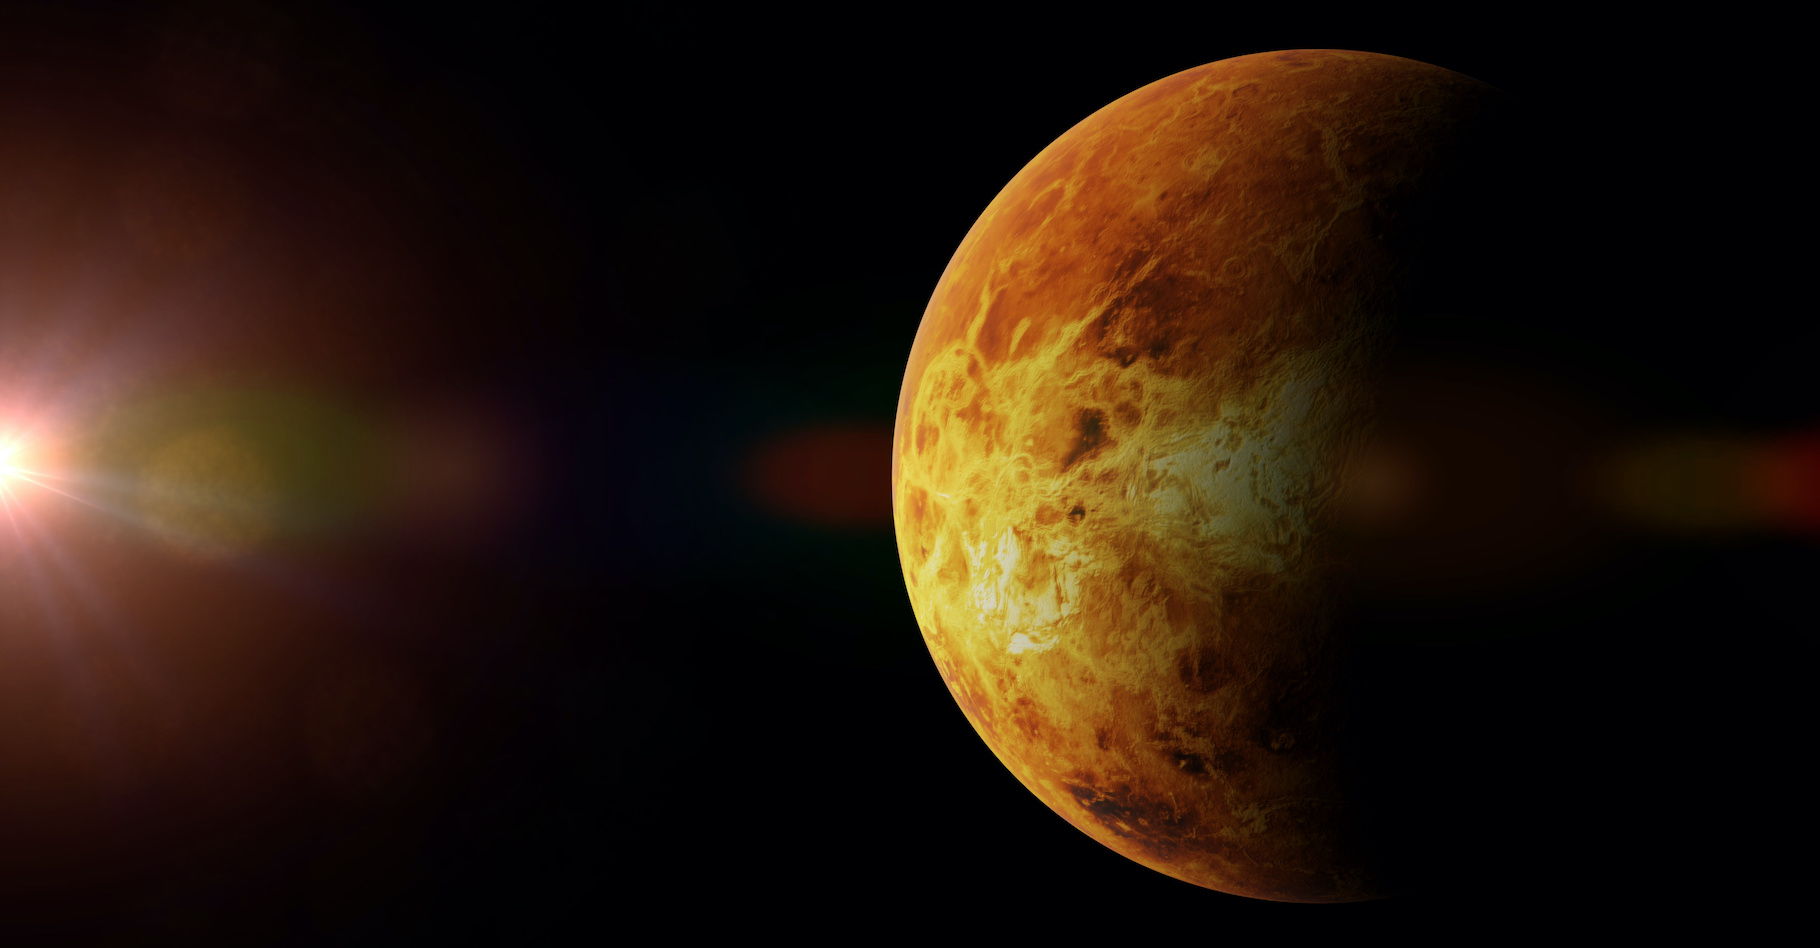 La planète Vénus, planète jumelle de la Terre. © dottedyeti, Adobe Stock